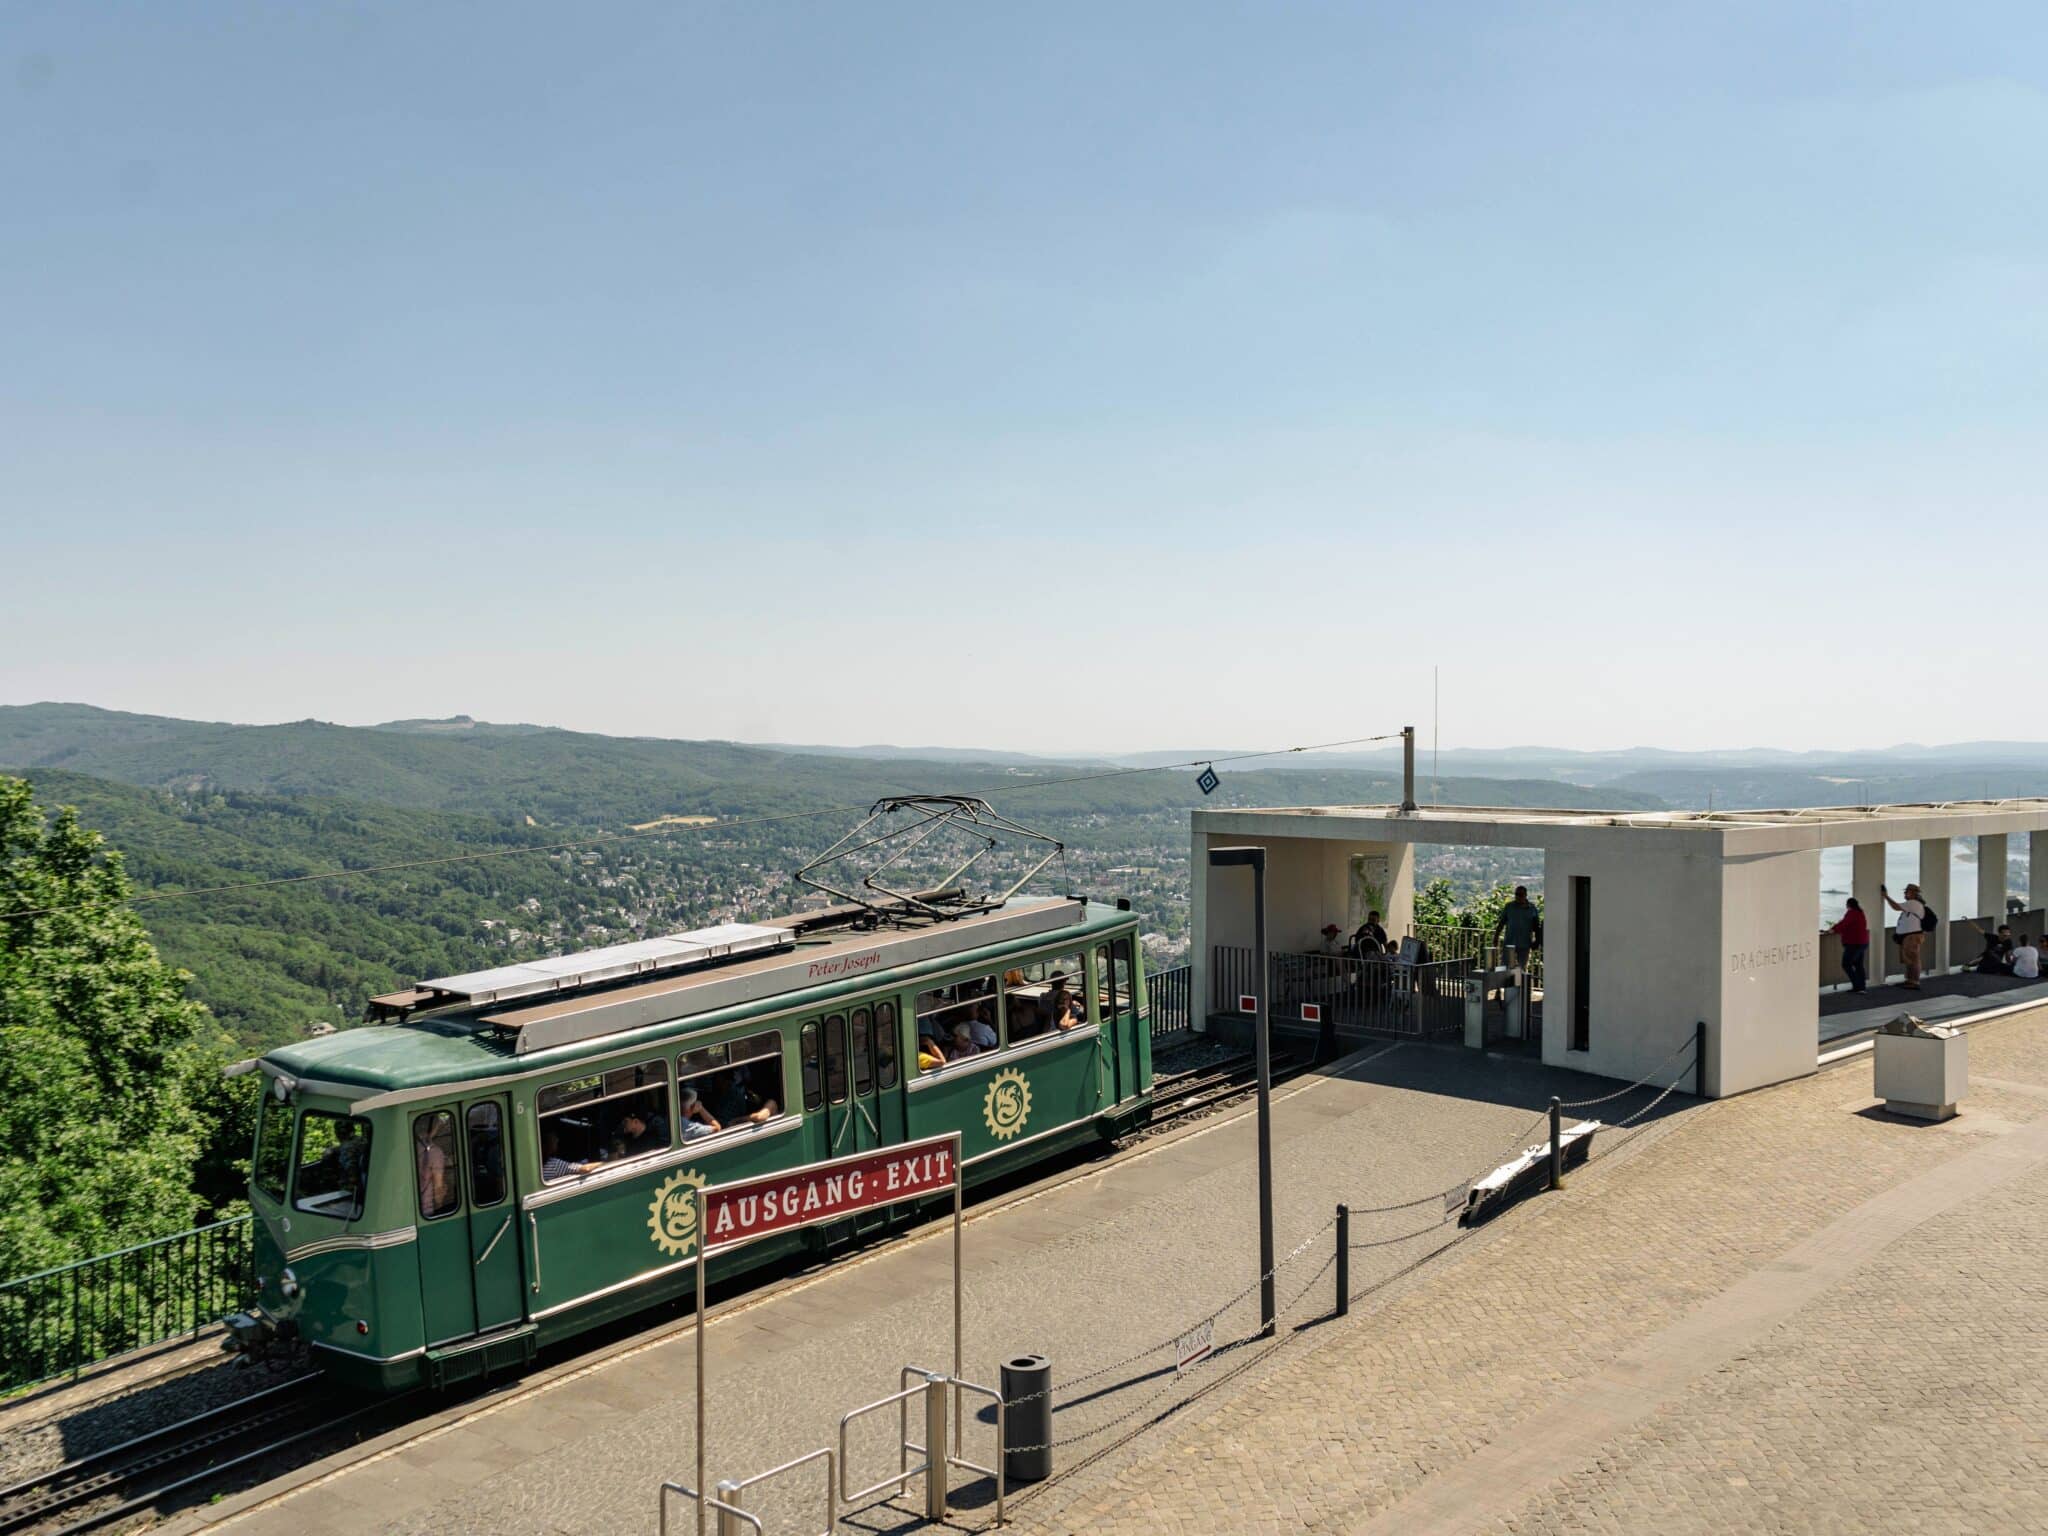 Mit höchster Ingenieurskunst begeistert die Drachenfelsbahn die Besucher aus aller Welt seit über 140 Jahren.